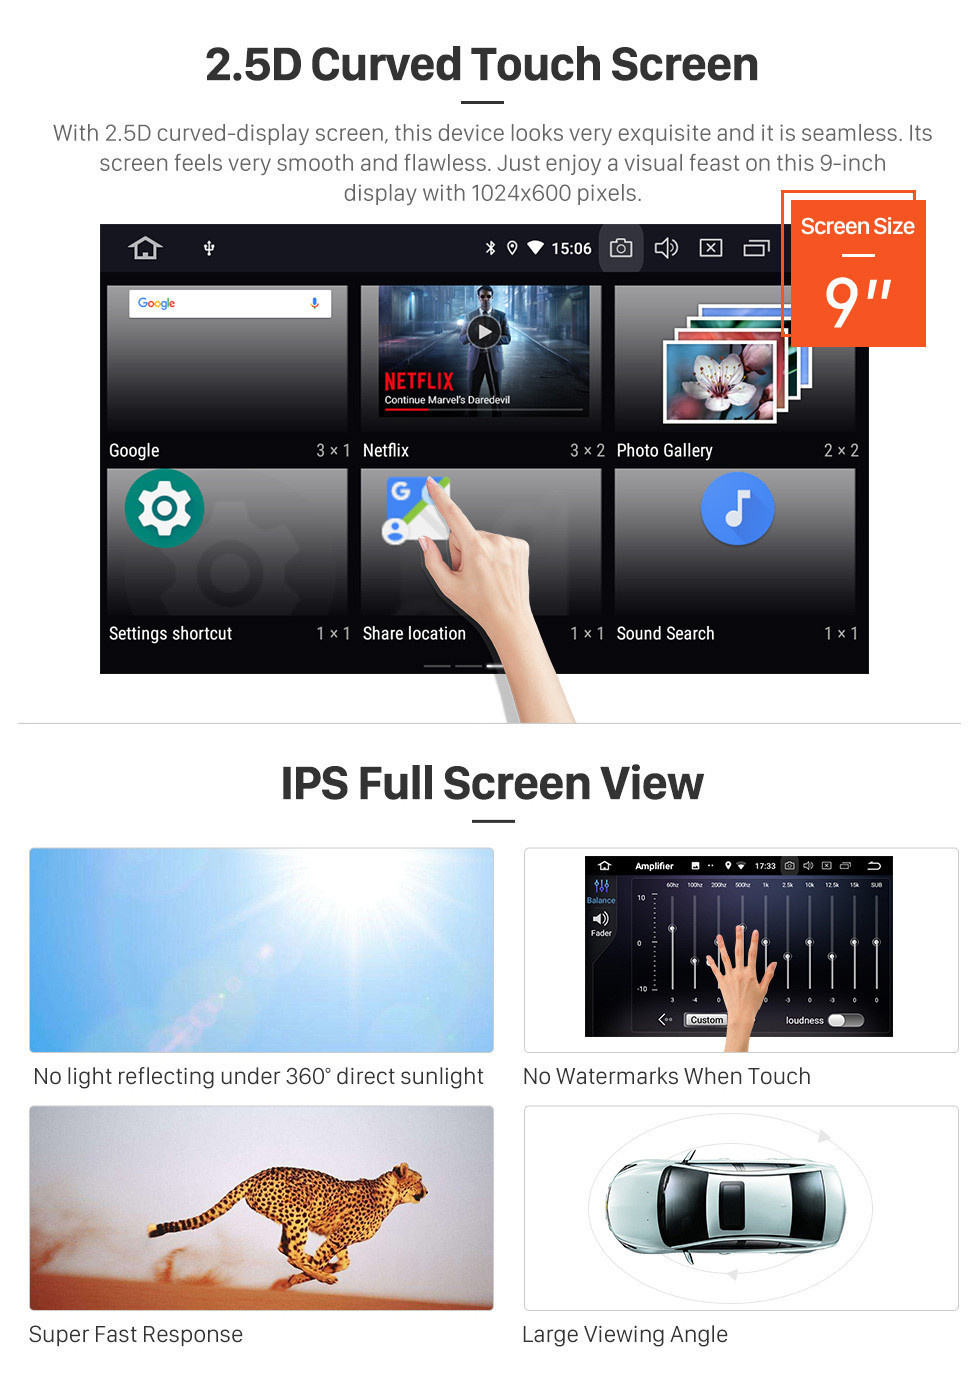 Seicane HD Touchscreen 2011-2016 Great Wall Haval H6 Android 11.0 9-Zoll-GPS-Navigationsradio Bluetooth Carplay WIFI-Unterstützung Lenkradsteuerung